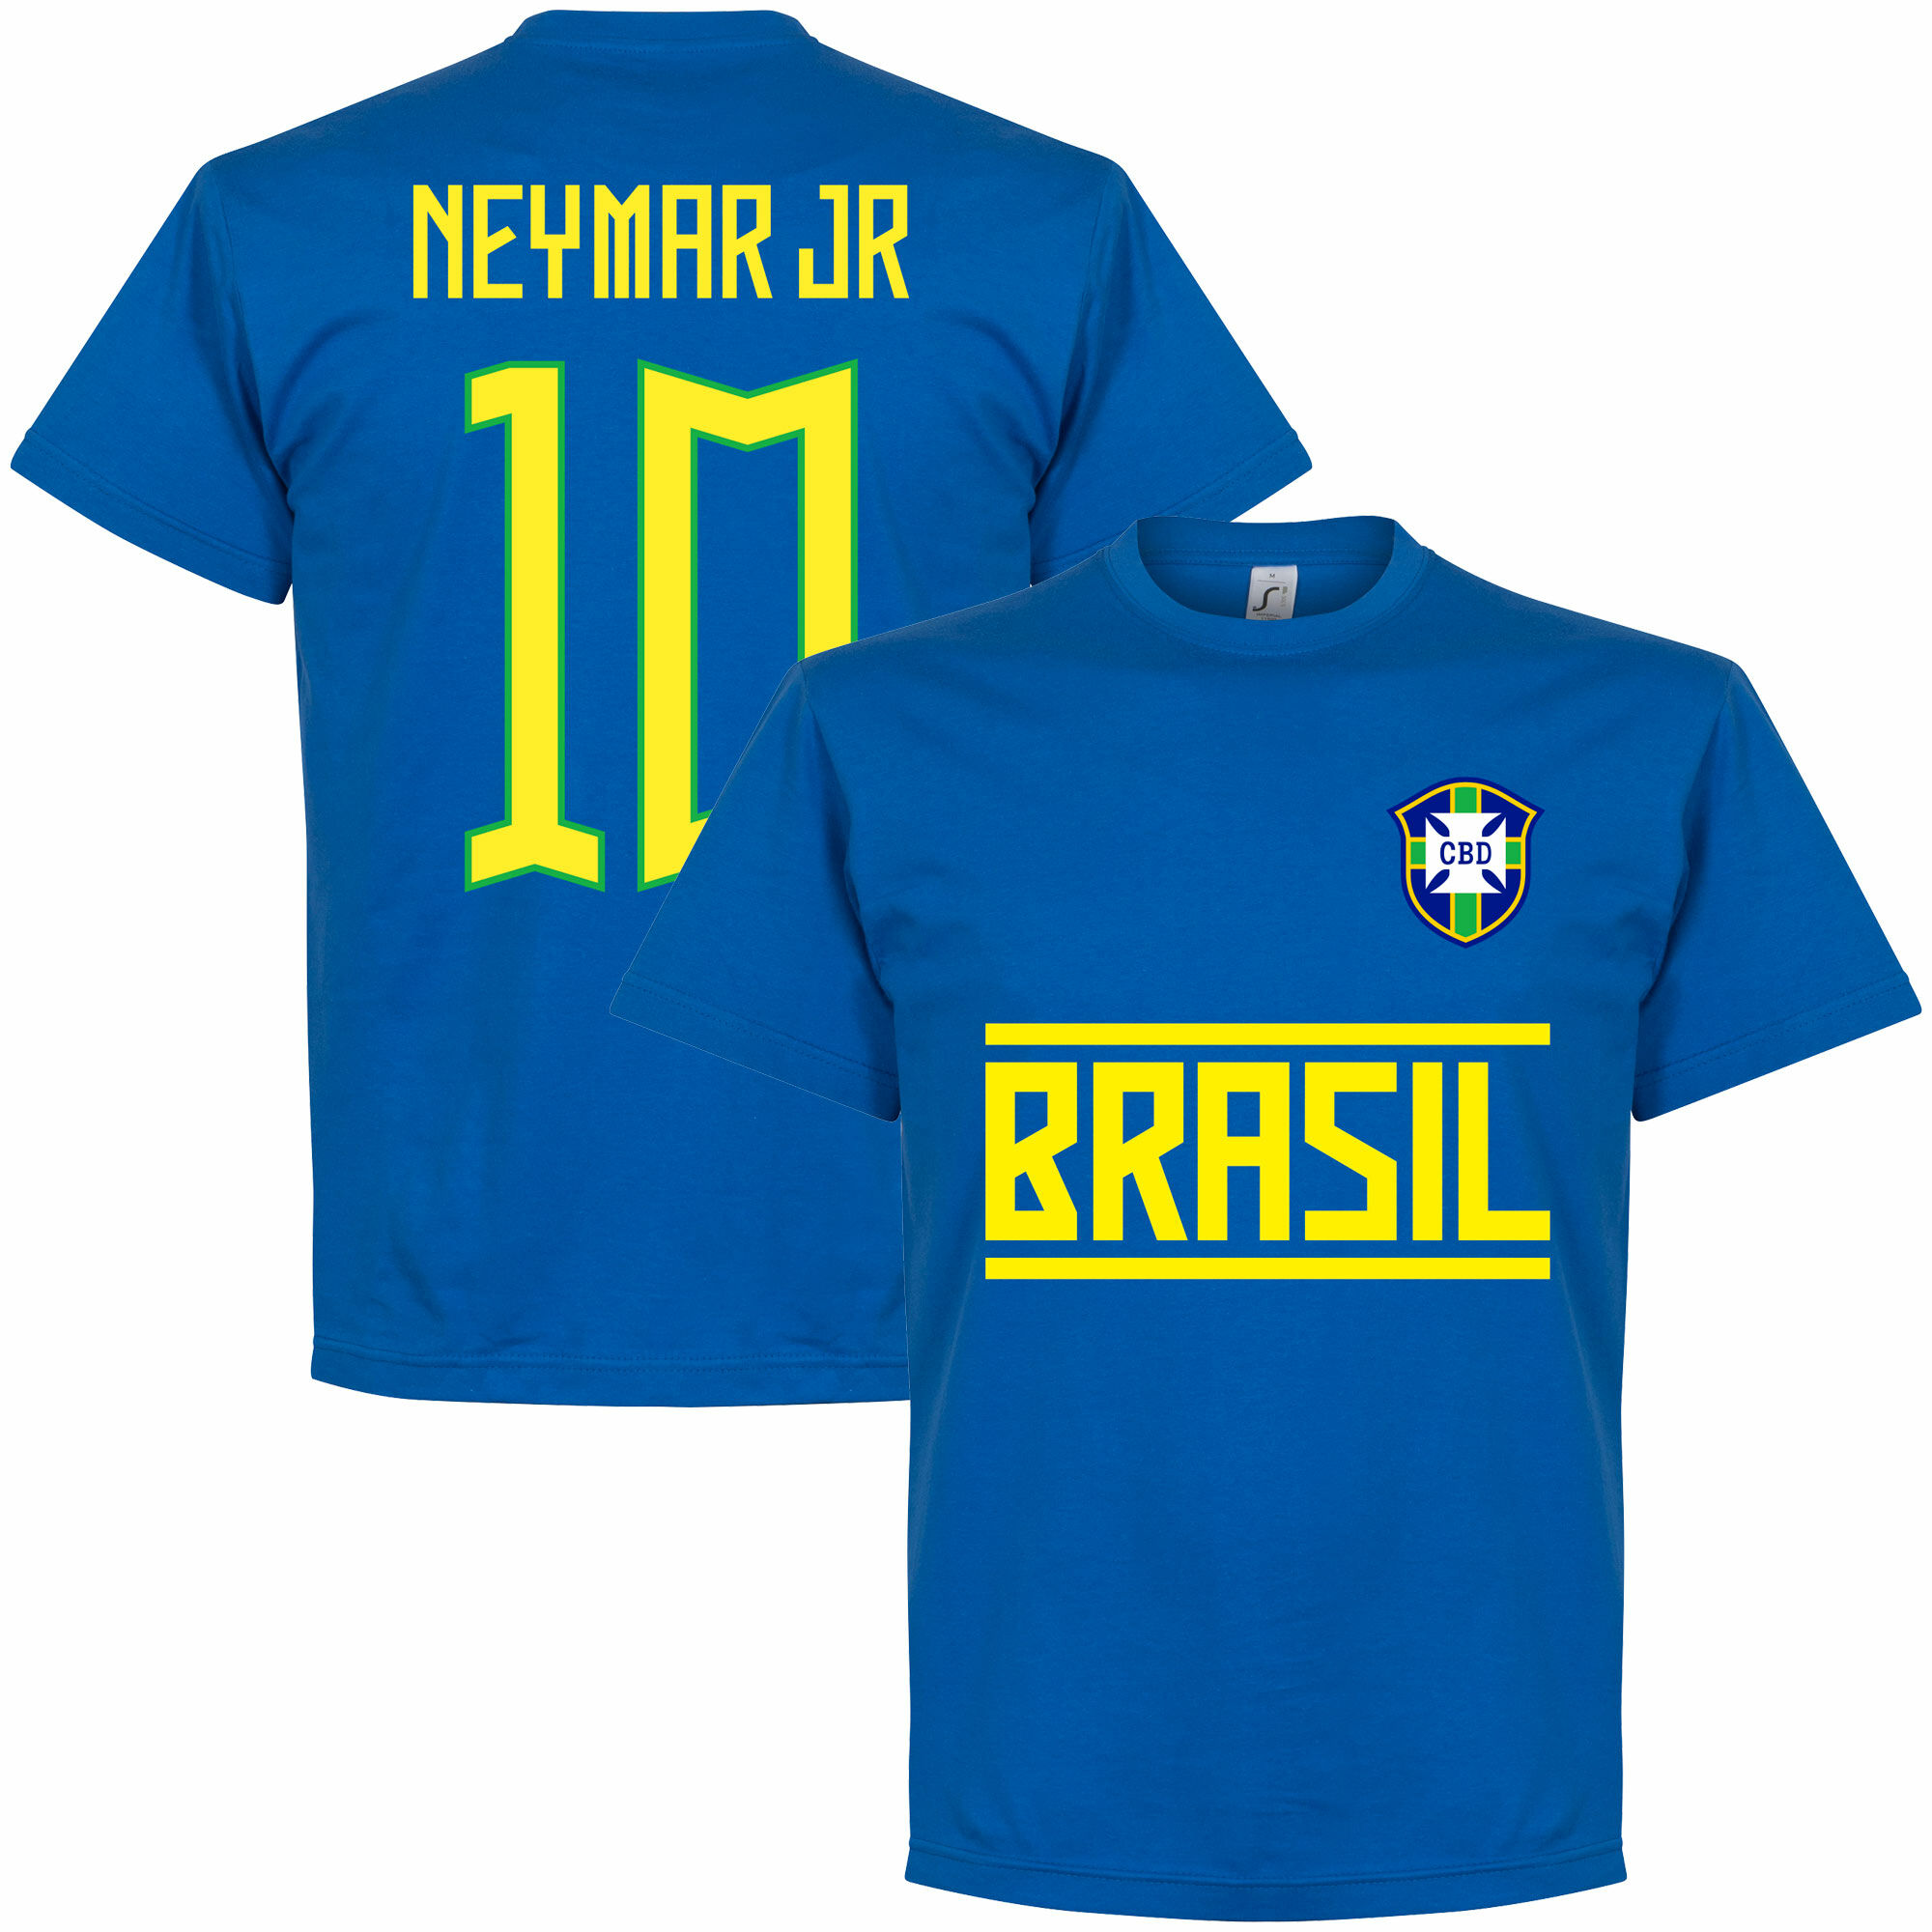 Brazílie - Tričko dětské - číslo 10, modré, Neymar